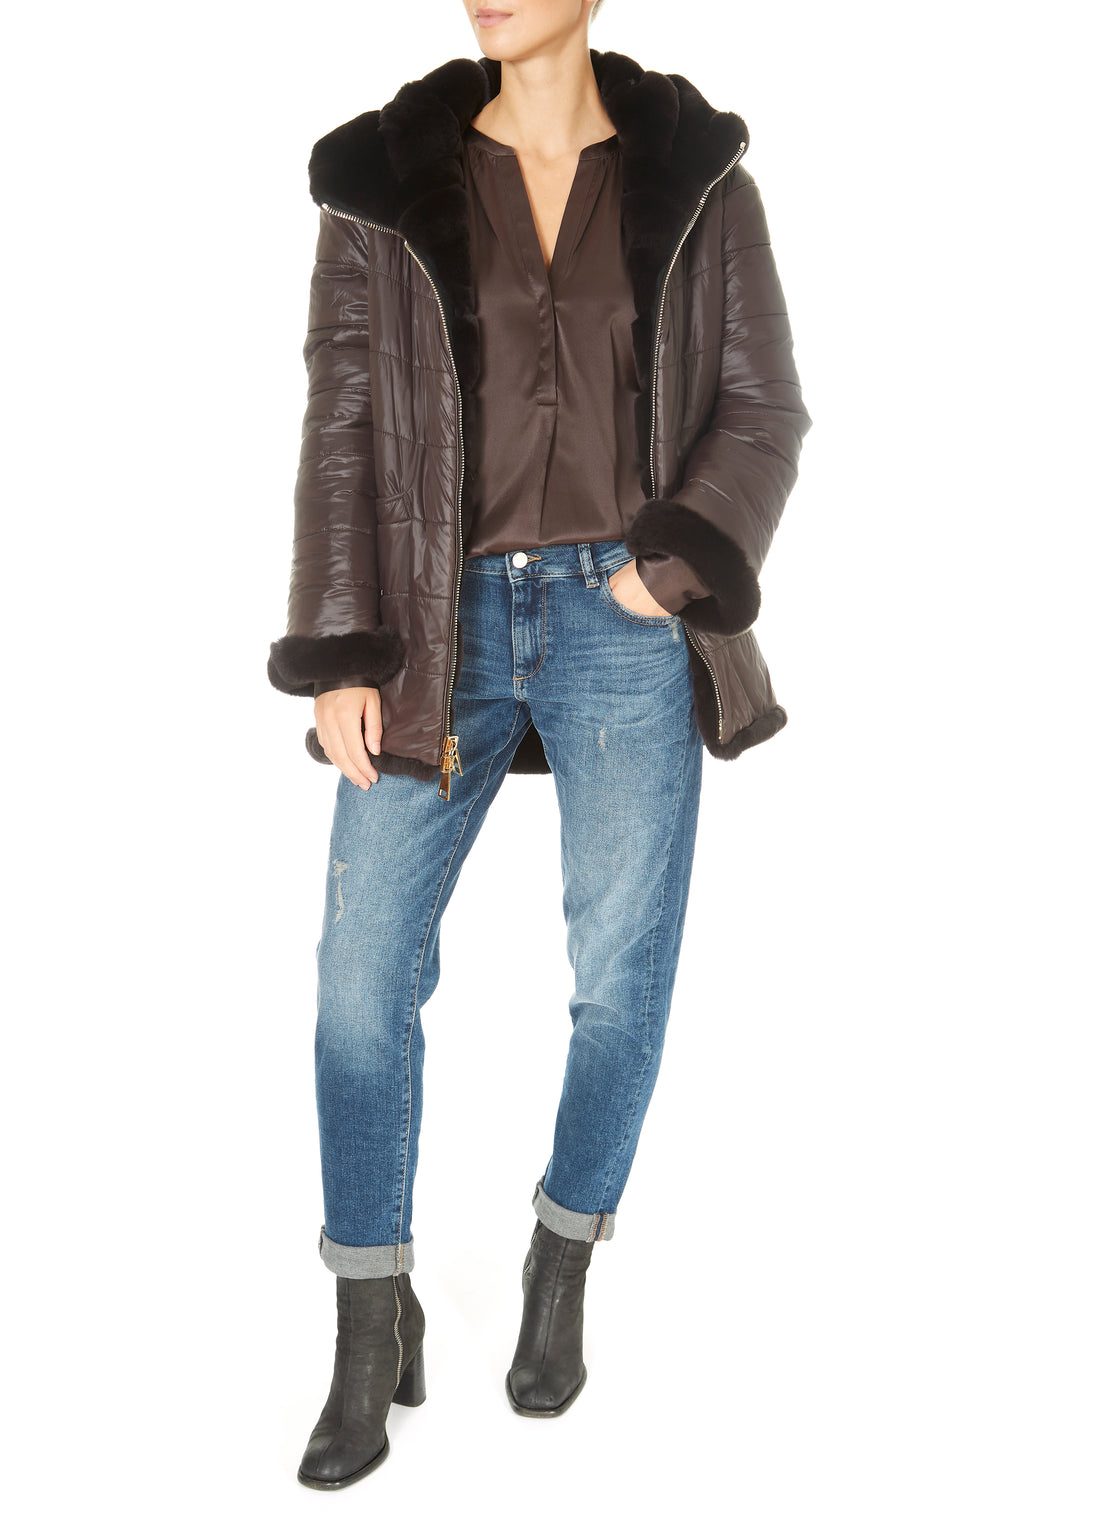 Suprema 'Reversible Brown Fur Coat' - Jessimara